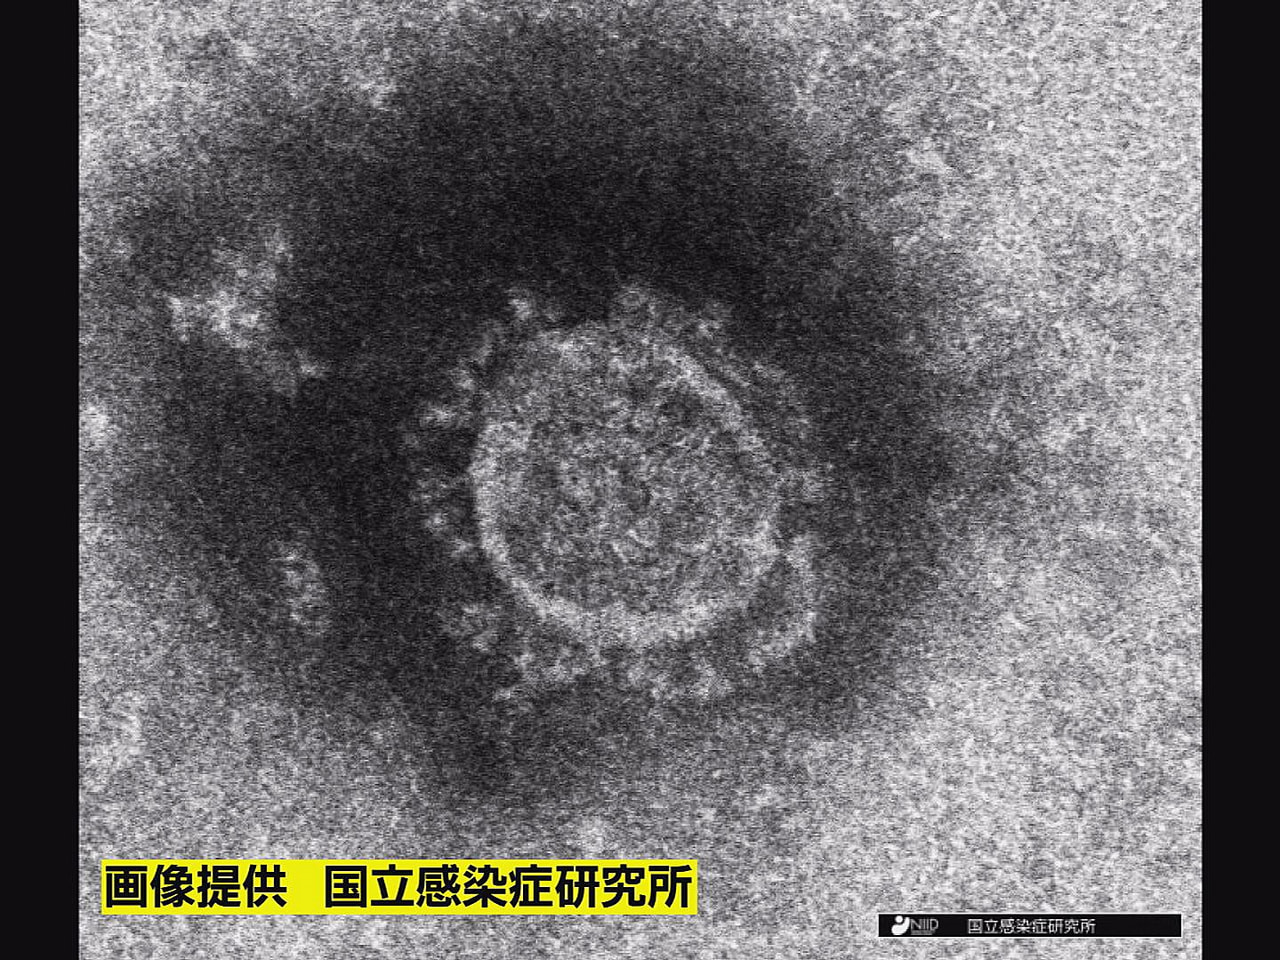 岐阜県は３日、新型コロナウイルスの感染が新たに９人確認されたと発表しました。 感...